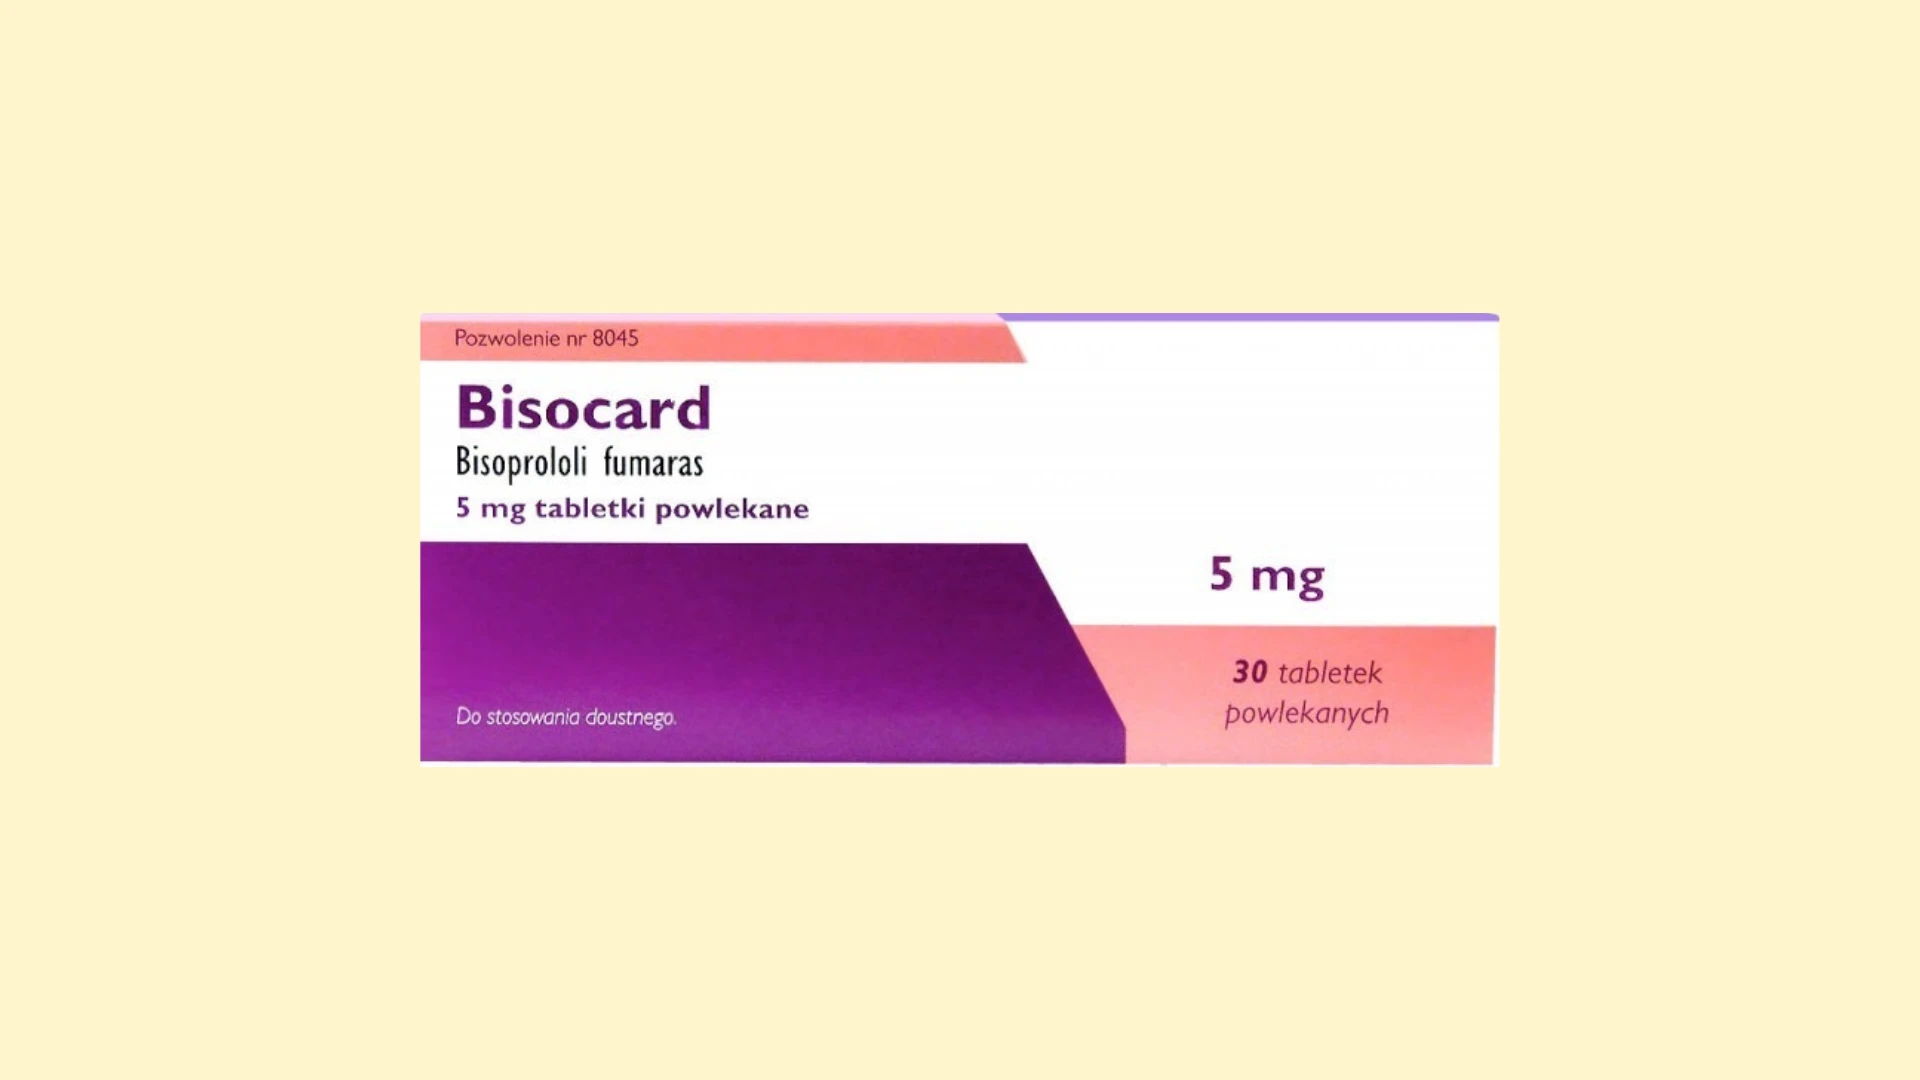 Bisocard - informacje o leku, dawkowanie oraz przeciwwskazania